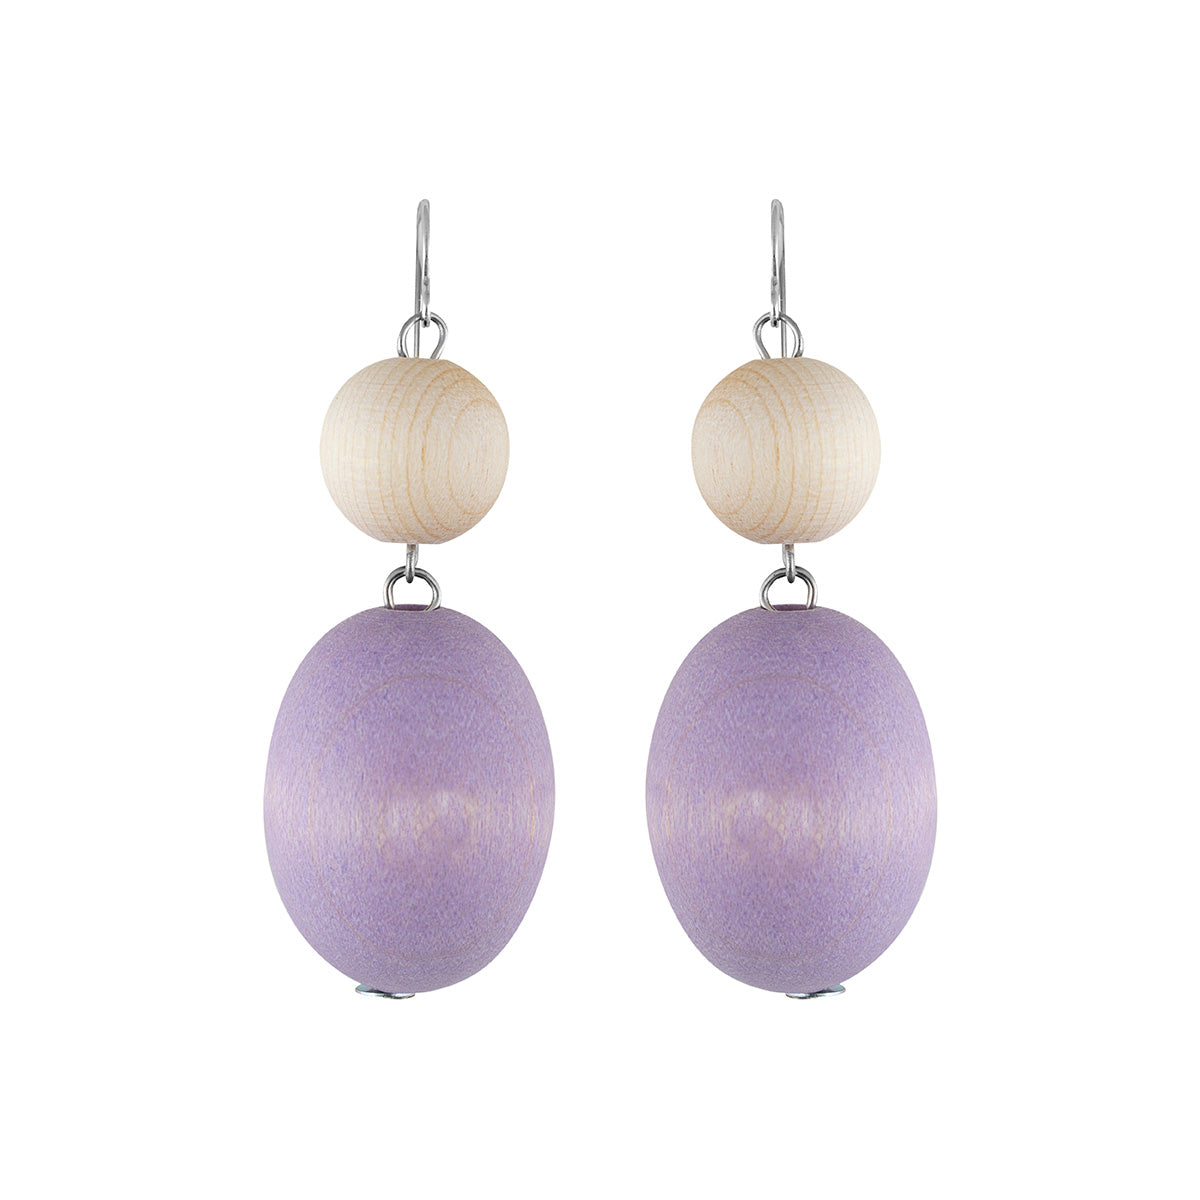 Taateli earrings, lavender